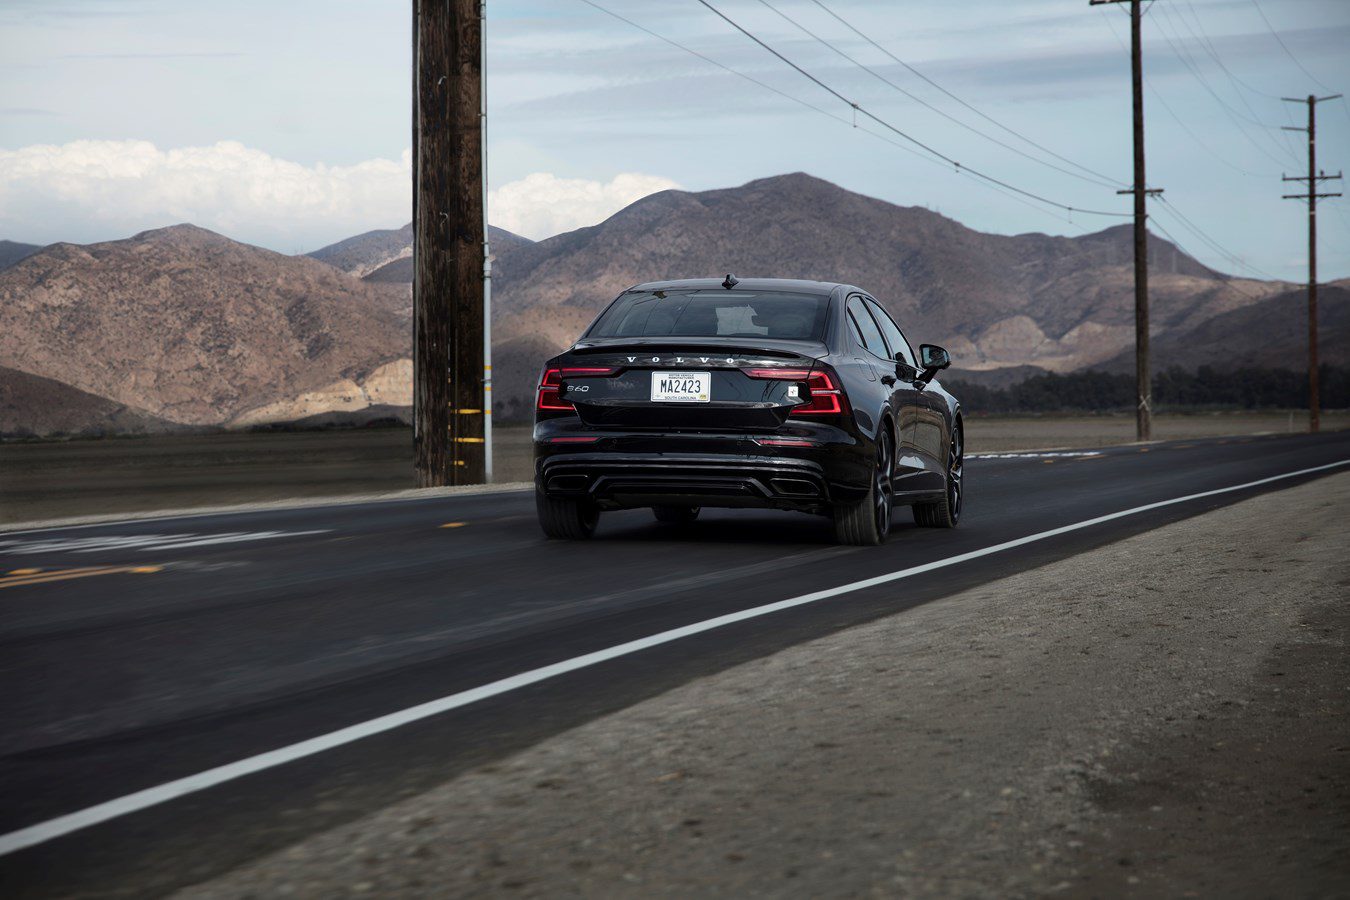 El nuevo Volvo S60 ya se puede adquirir en México. Detalles y precio